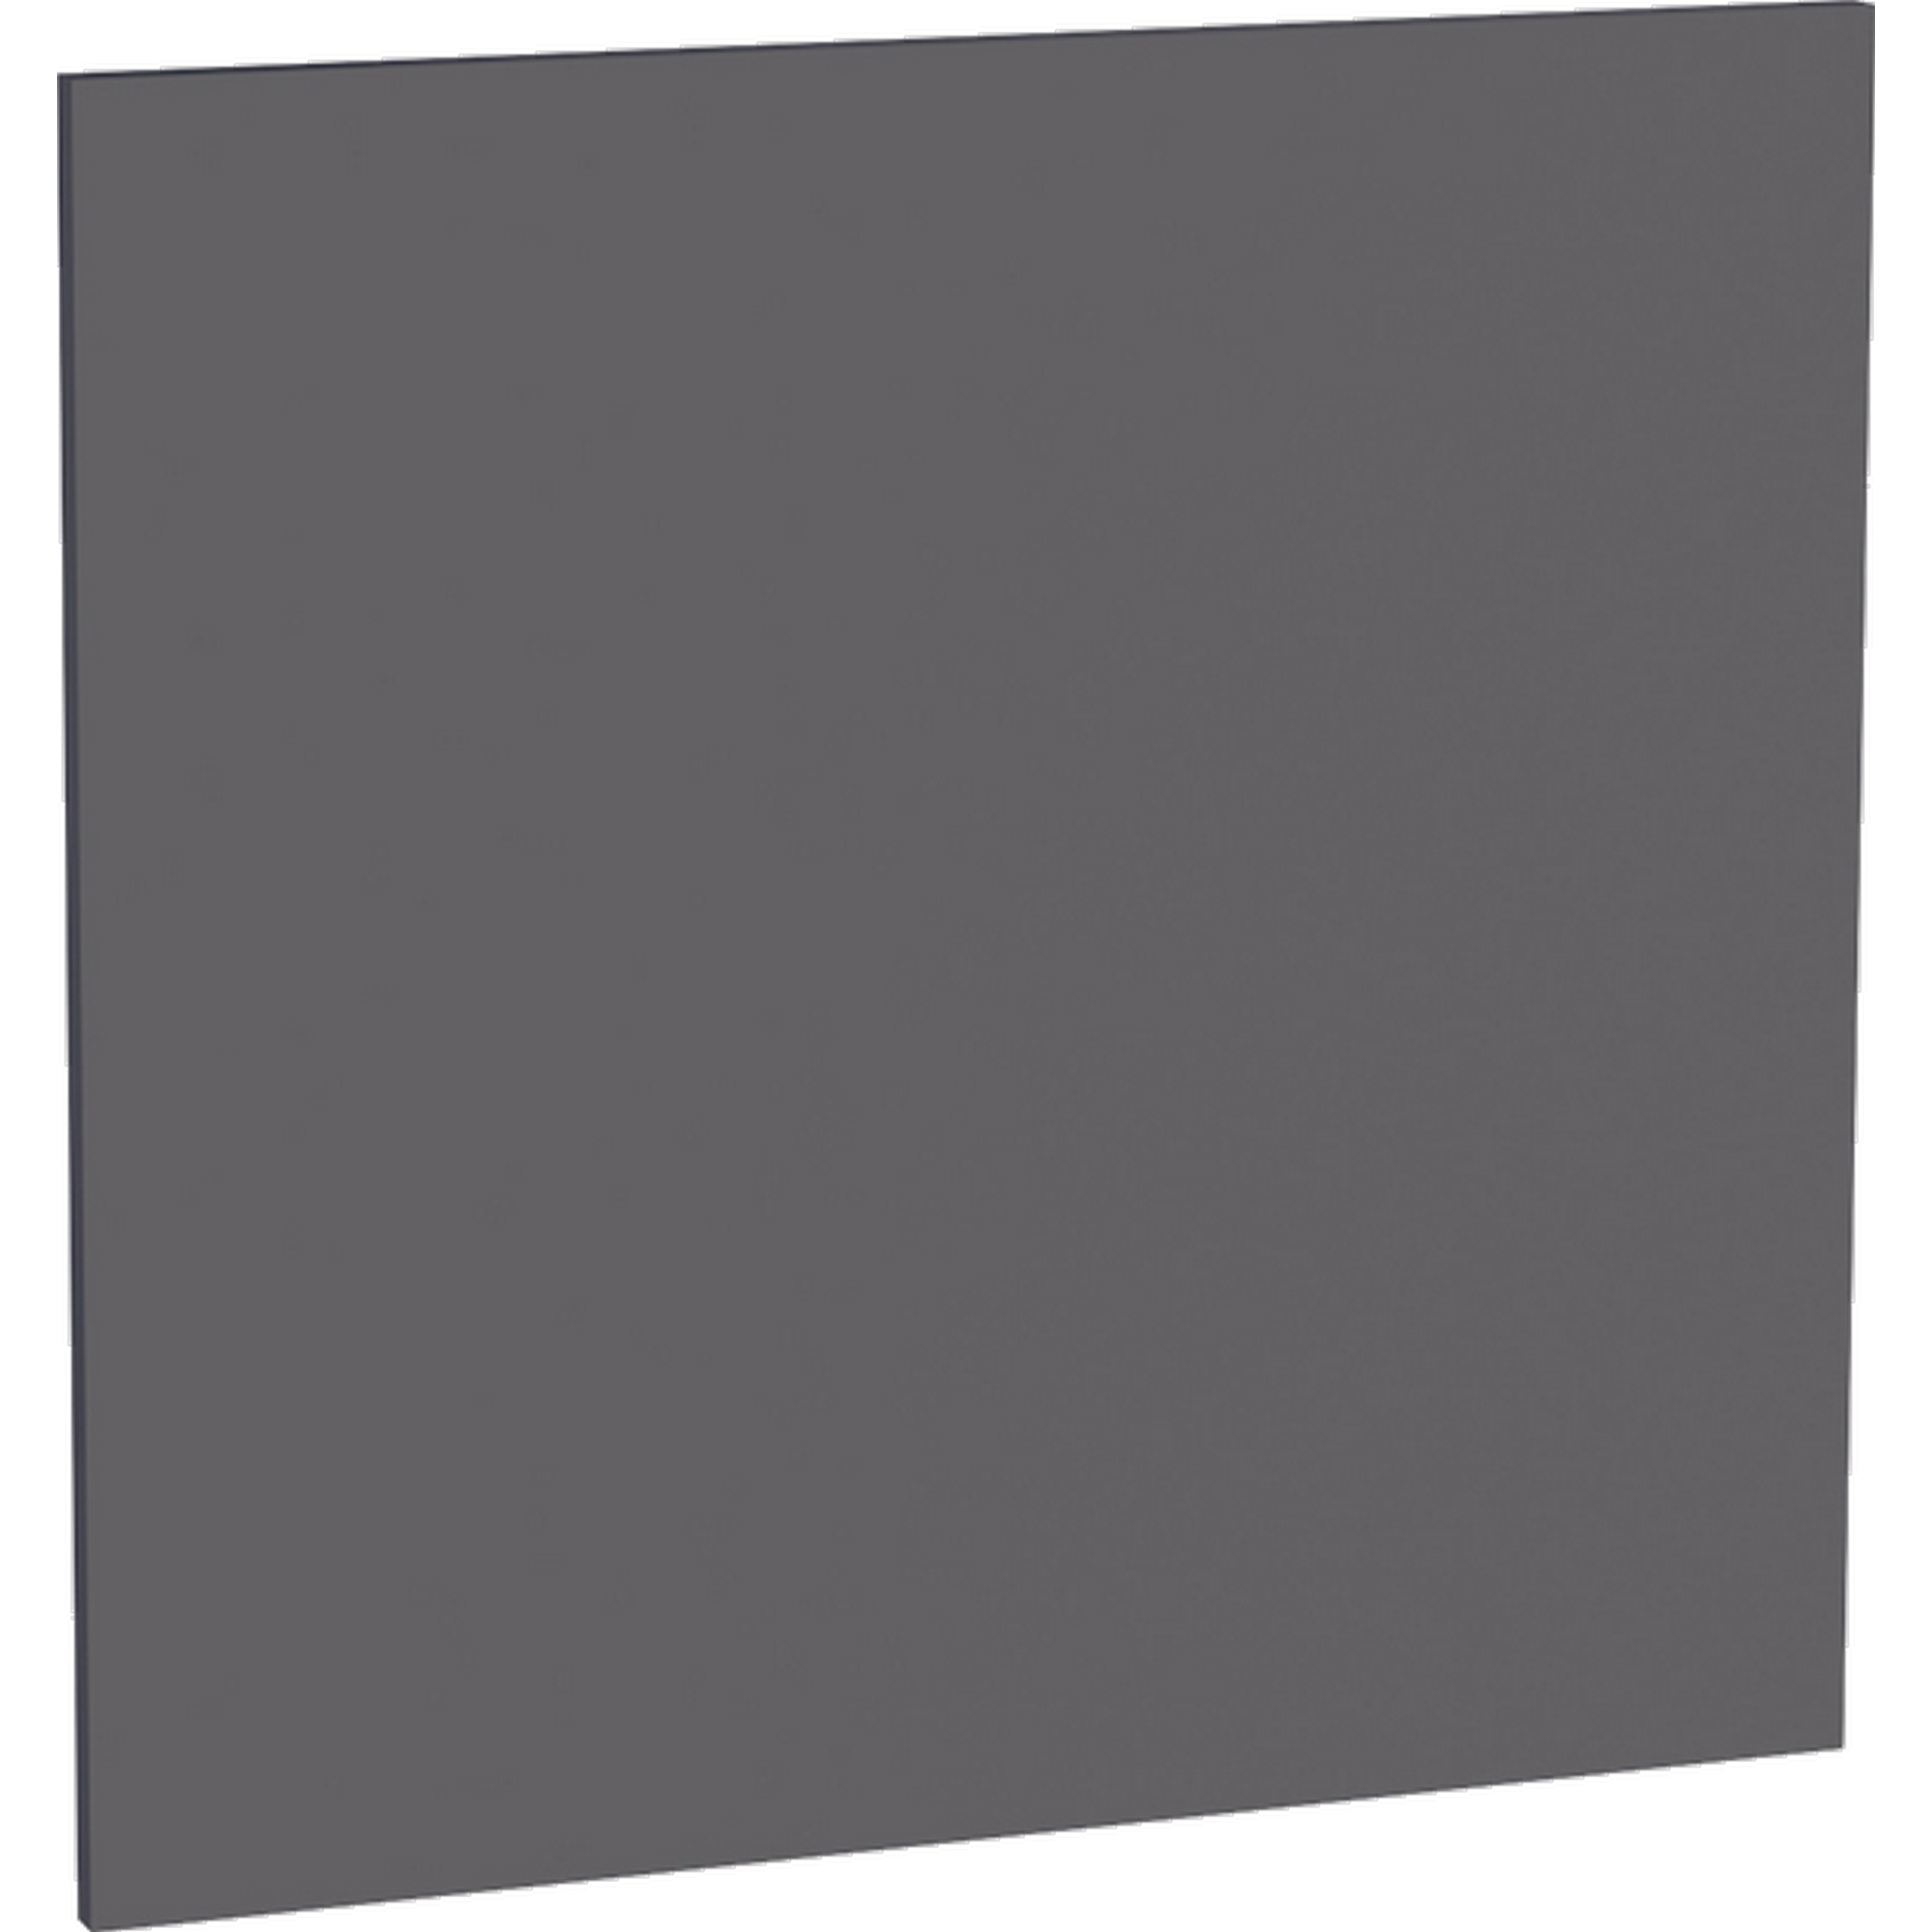 Tür für teilintegrierten Geschirrspüler 'Optikomfort Ingvar420' anthrazit matt 60 x 57,2 x 1,6 cm + product picture